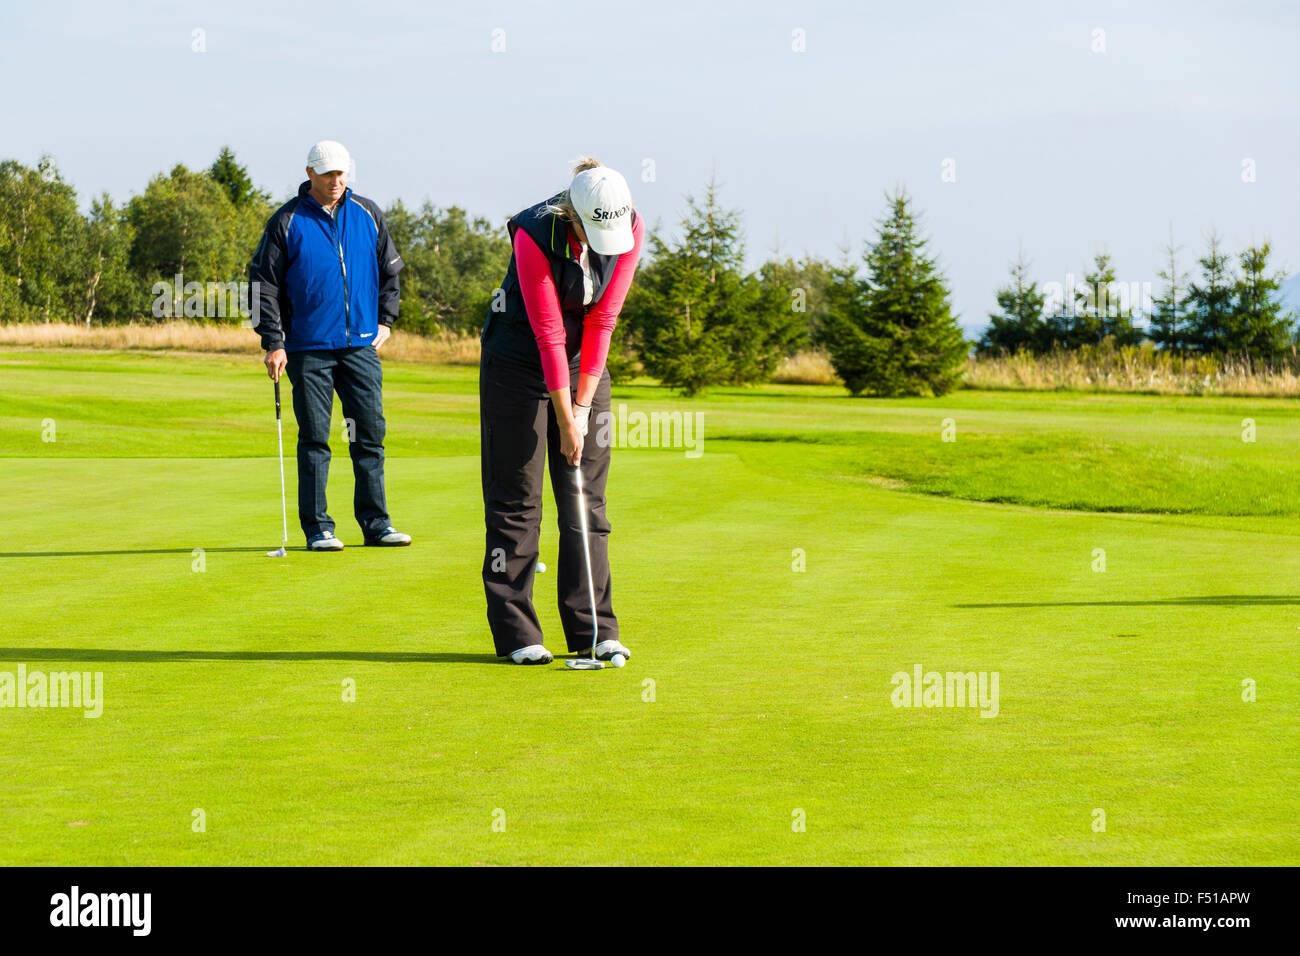 Un uomo e una donna sta giocando a golf su un verde prato Foto Stock